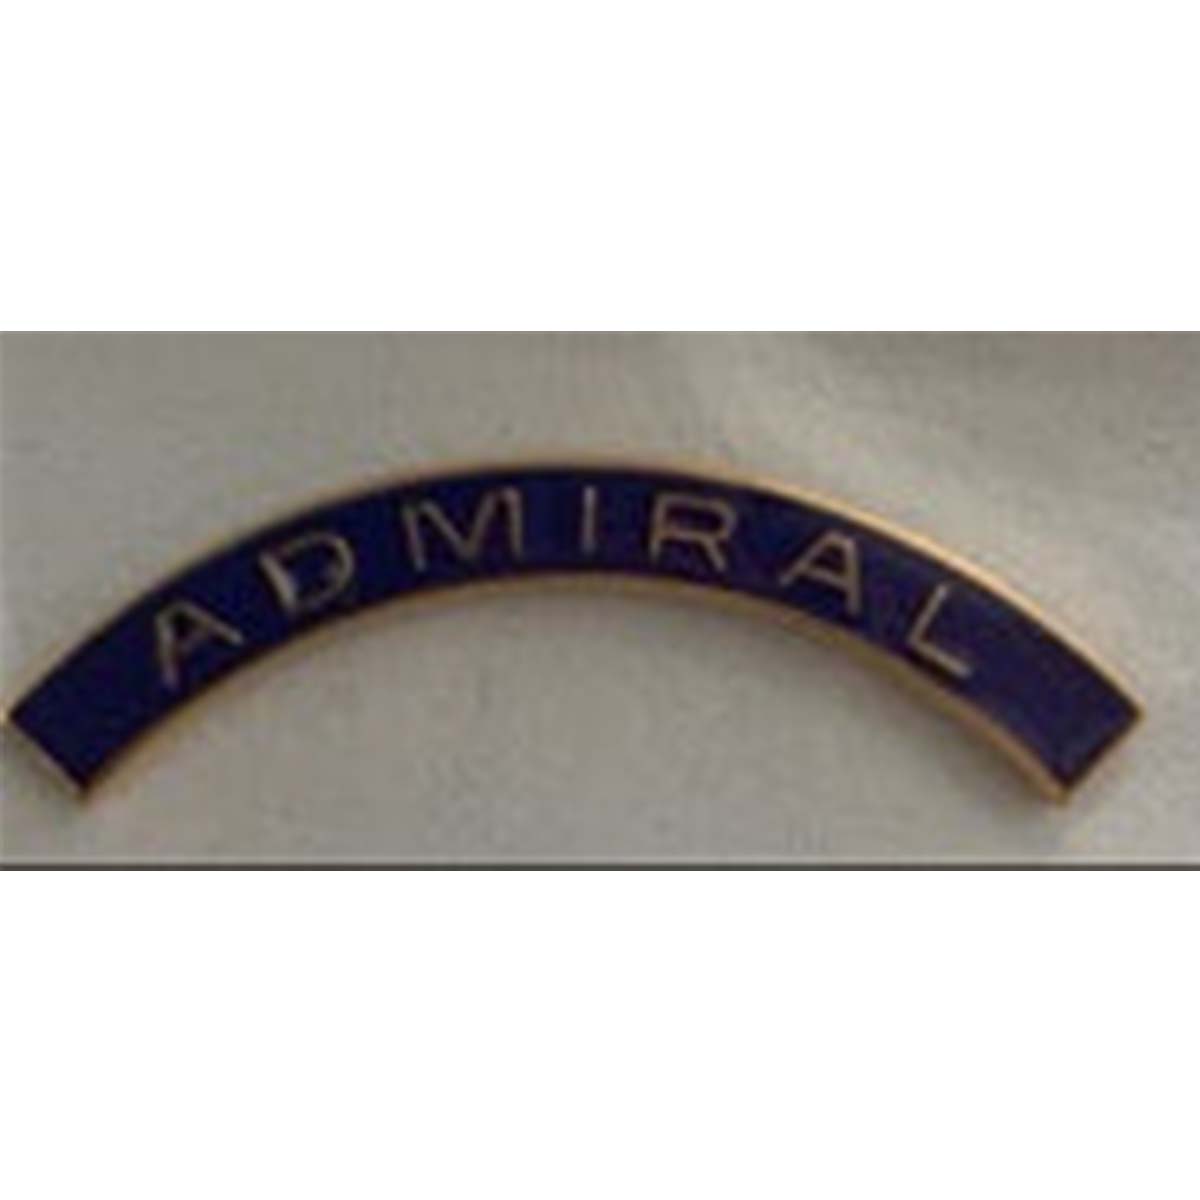 Barra de repuesto para medalla de montaje - Admiral